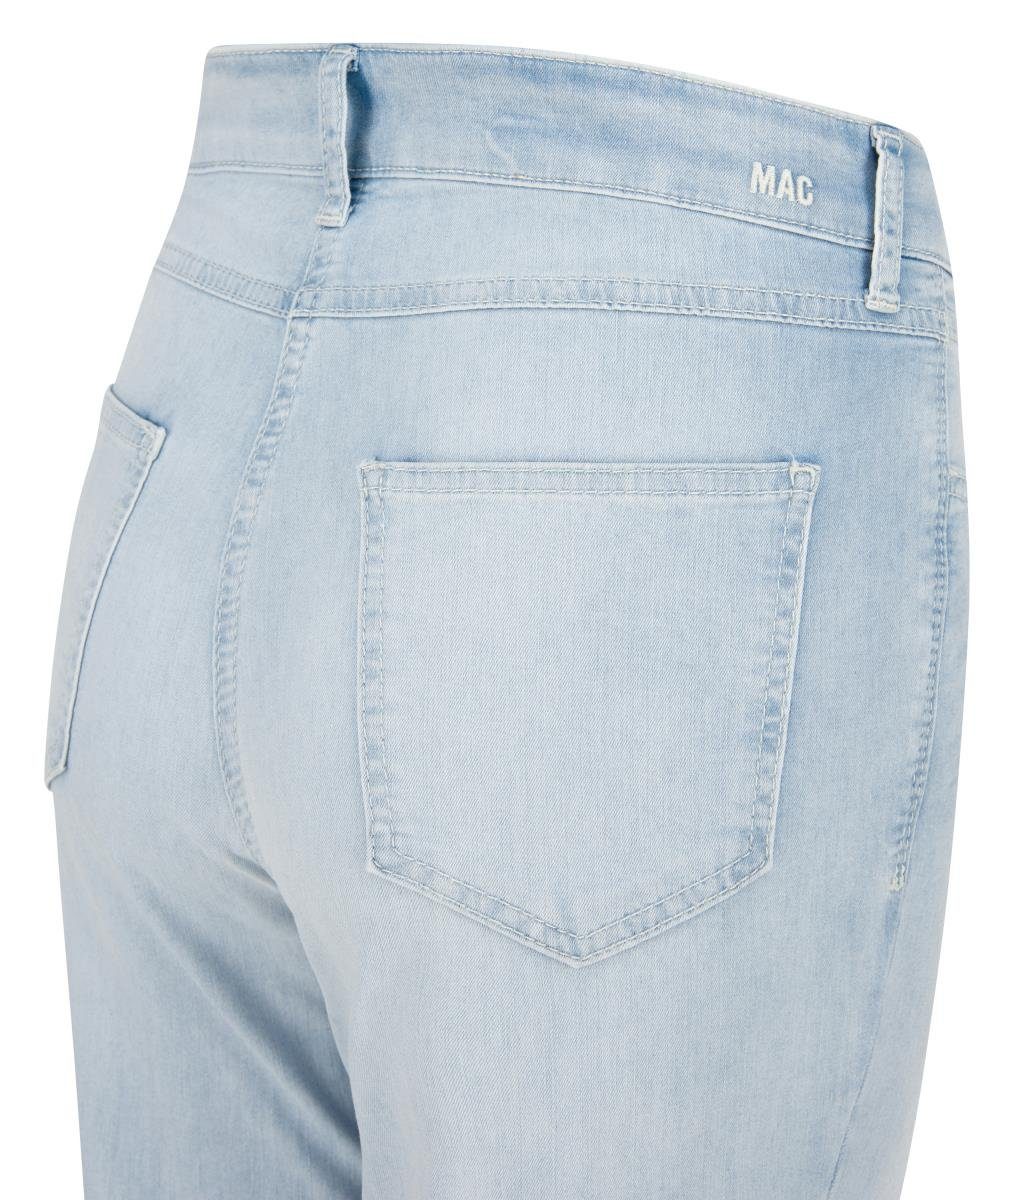 MAC Stretch-Jeans MAC MELANIE 7/8 SUMMER batic D130 bleached 5045-90-0394